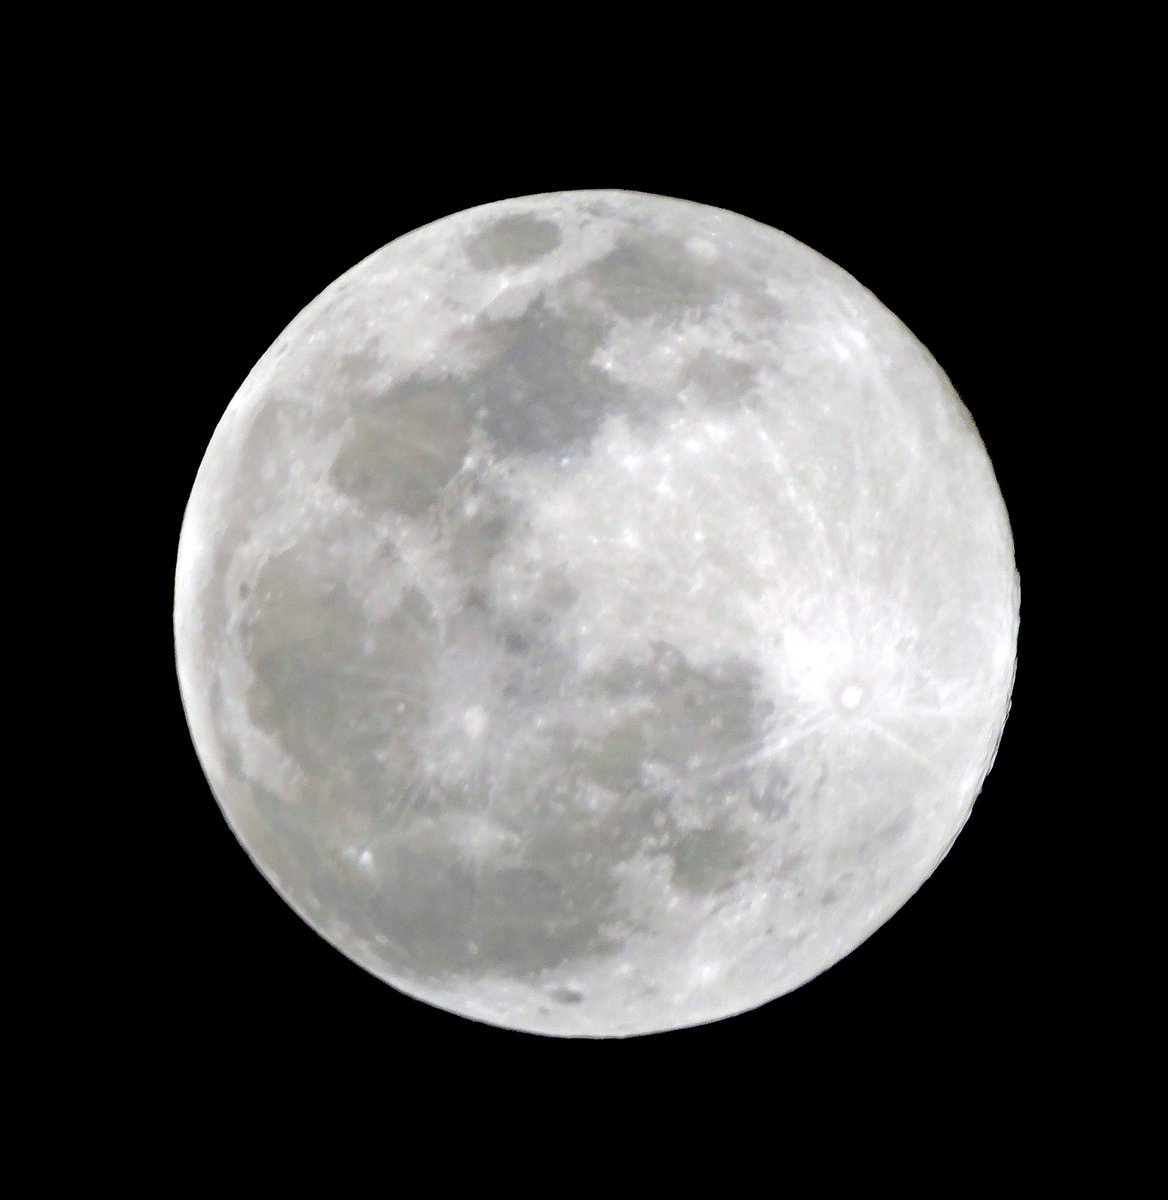 昨日は満月だったので望遠レンズで撮影♪
やっぱりキレイですね😊
#月#moon#満月#スーパームーン満月 #望月 #fullmoon #moonlight #moonlovers #moon_awards #moon_of_the_day #moonphotography #イマソラ #イマツキ #astronomy #instamoon #goodnight #igで繋がる空 #ダレカニミセタイソラ